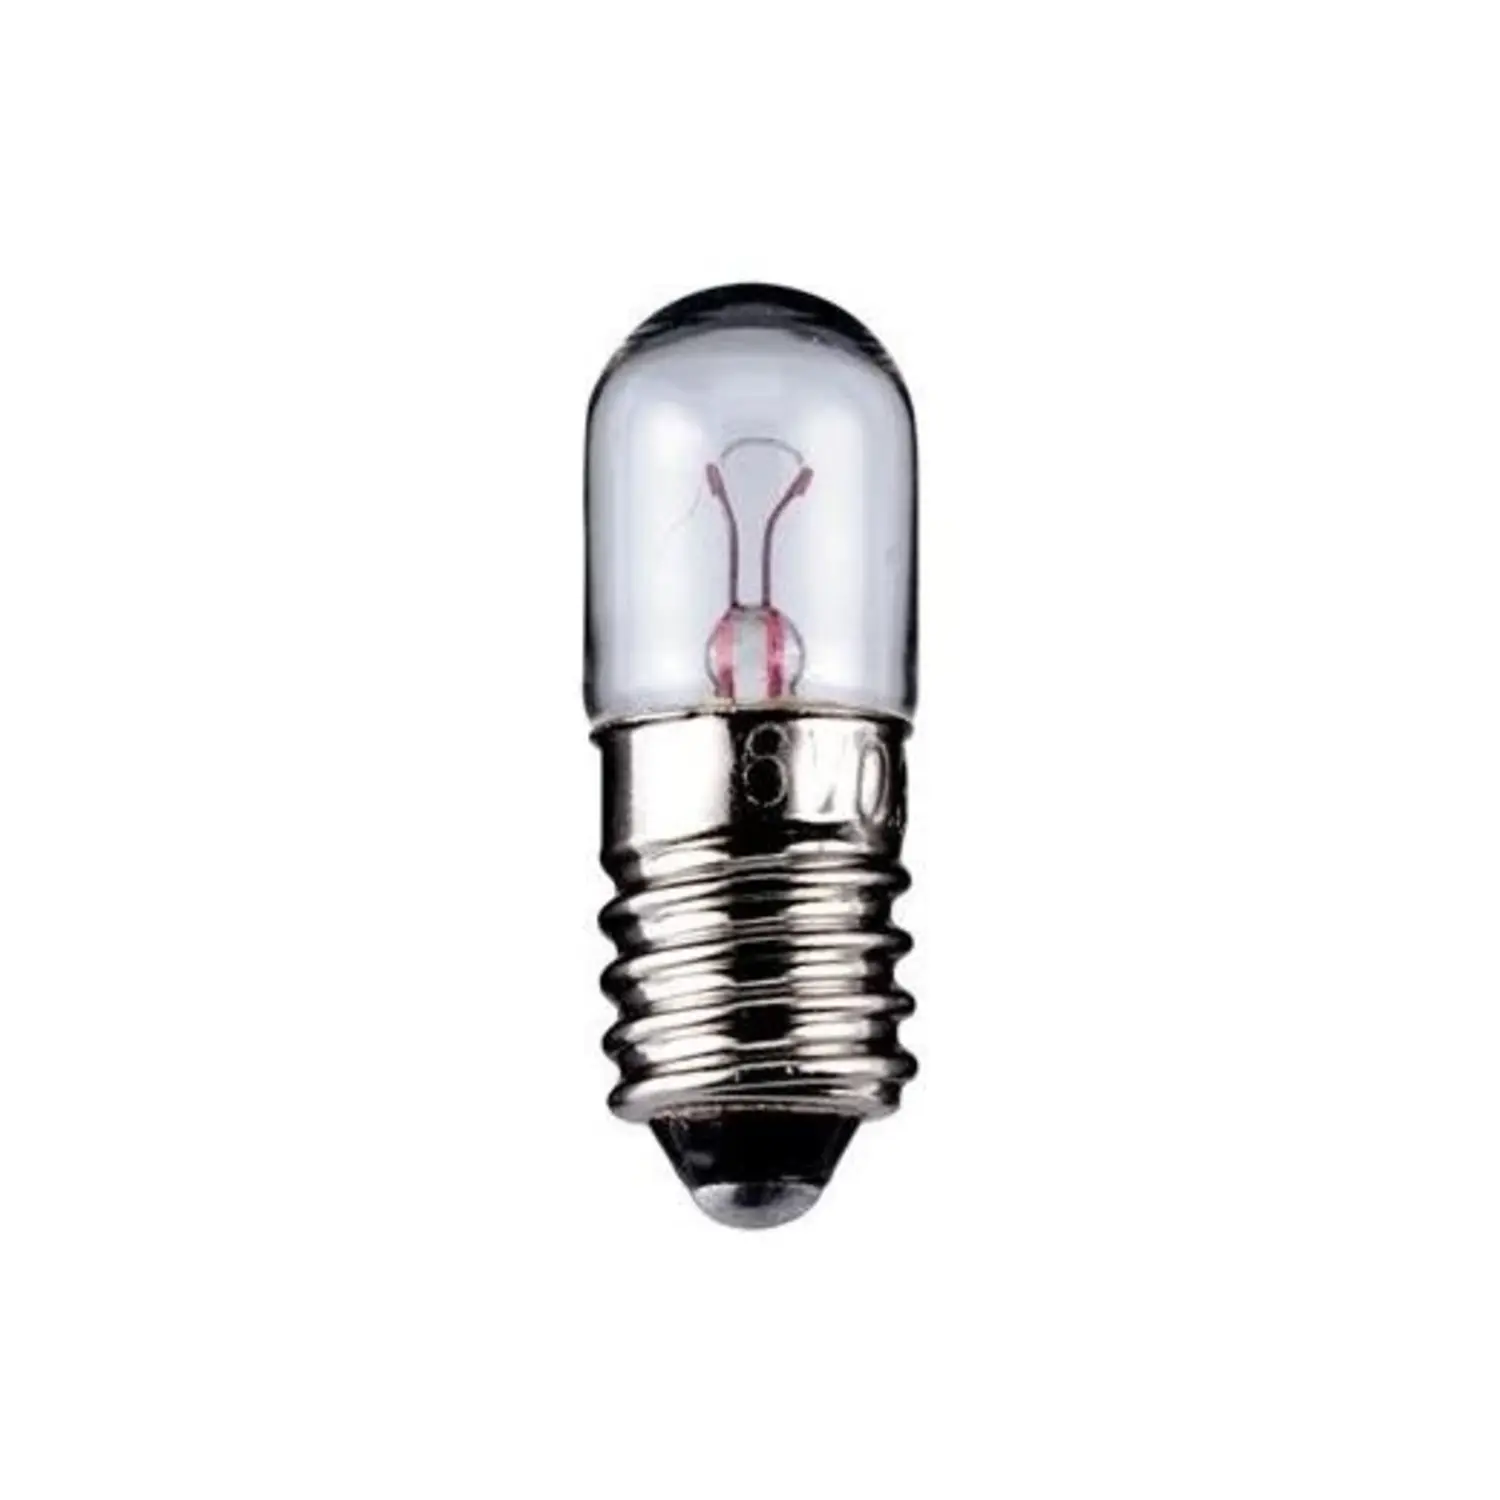 immagine del prodotto lampadina tubolare  trasparente E10 CE bianco caldo 12 volt 1,20 watt wnt 9313